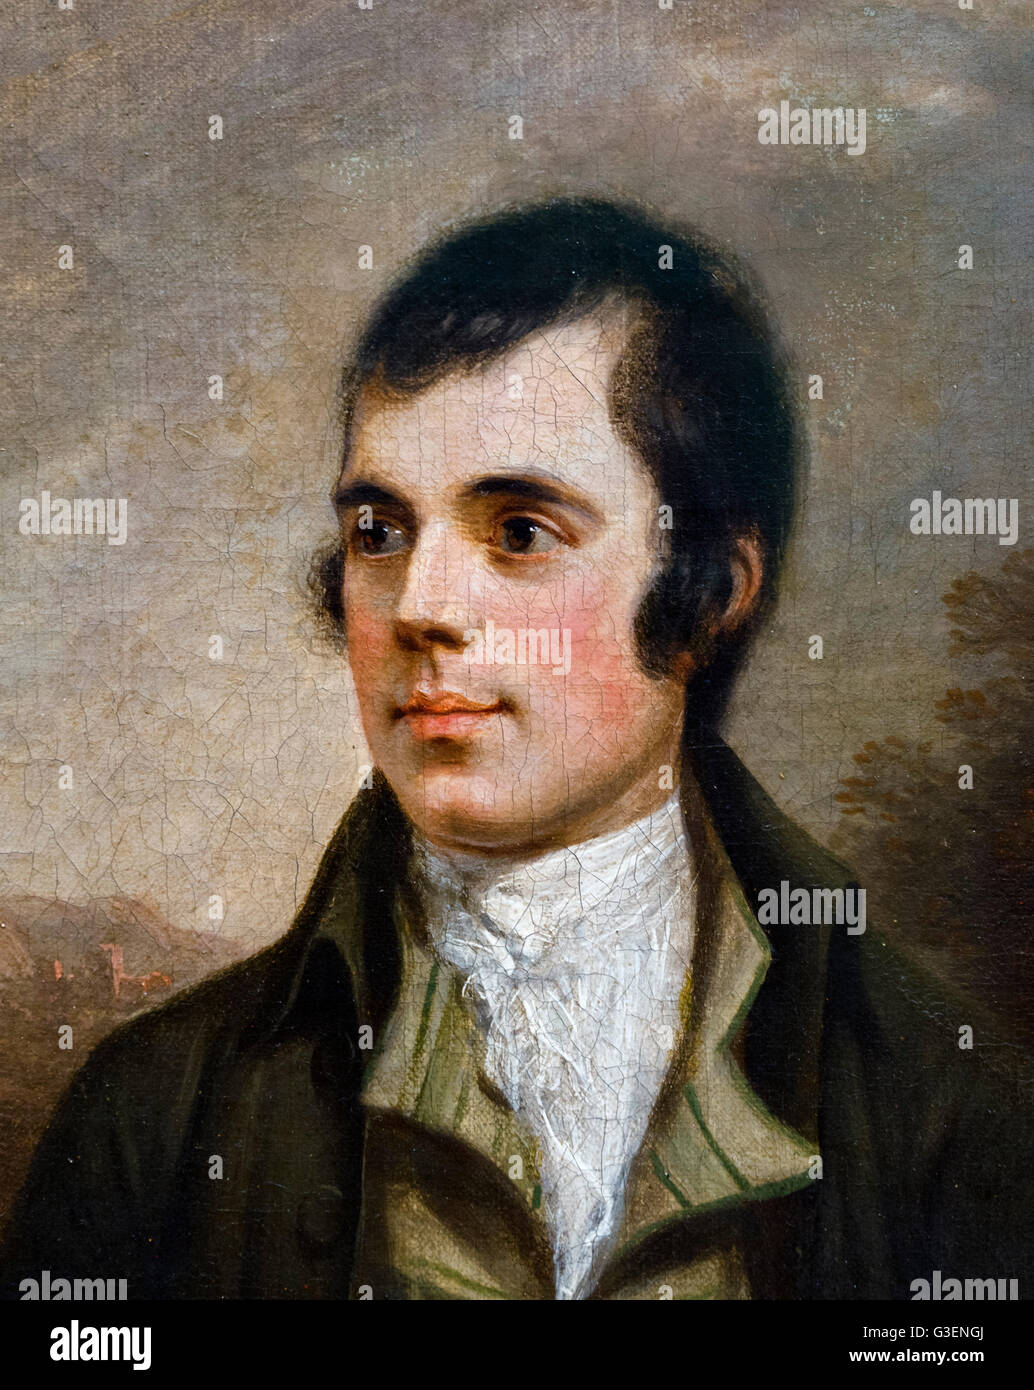 18thC schottischen Dichters Robert Burns (1759-1796), auch bekannt als Rabbie Burns war ein schottischer Dichter und Lyriker, weithin als der Nationaldichter Schottland. Porträt von Alexander Nasmyth, Öl auf Leinwand, 1787. Dieses Bild ist ein Ausschnitt eines größeren Bildes, G3ENGY. Stockfoto